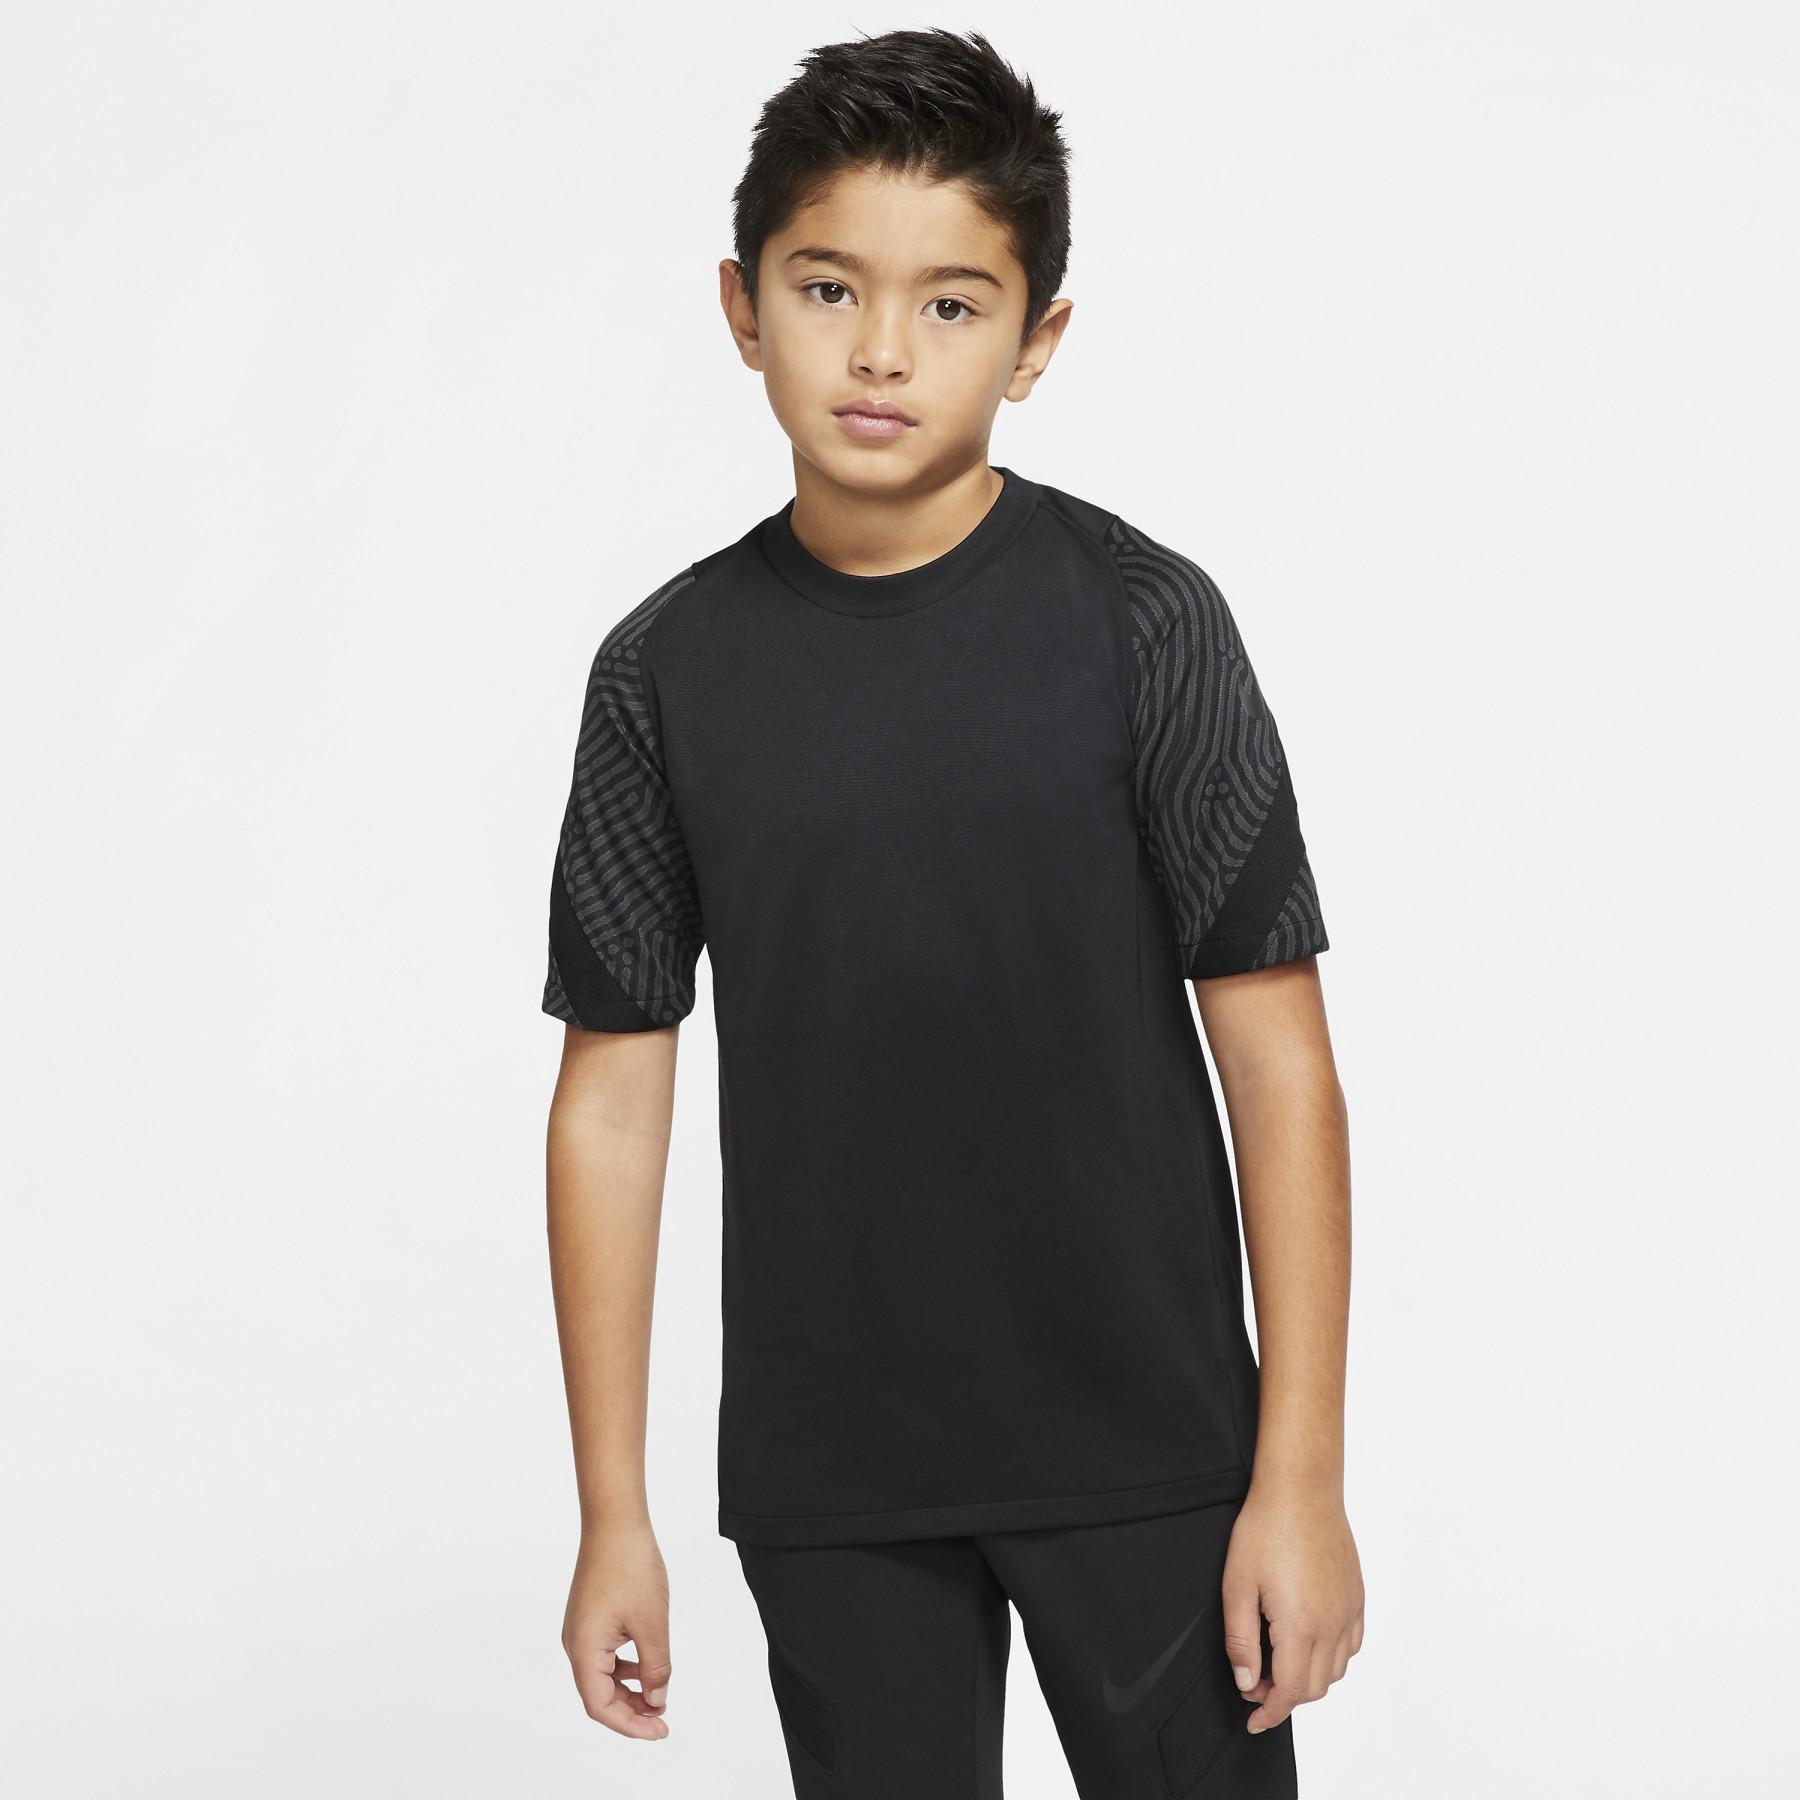 Kinder-T-Shirt Nike Breathe Strike